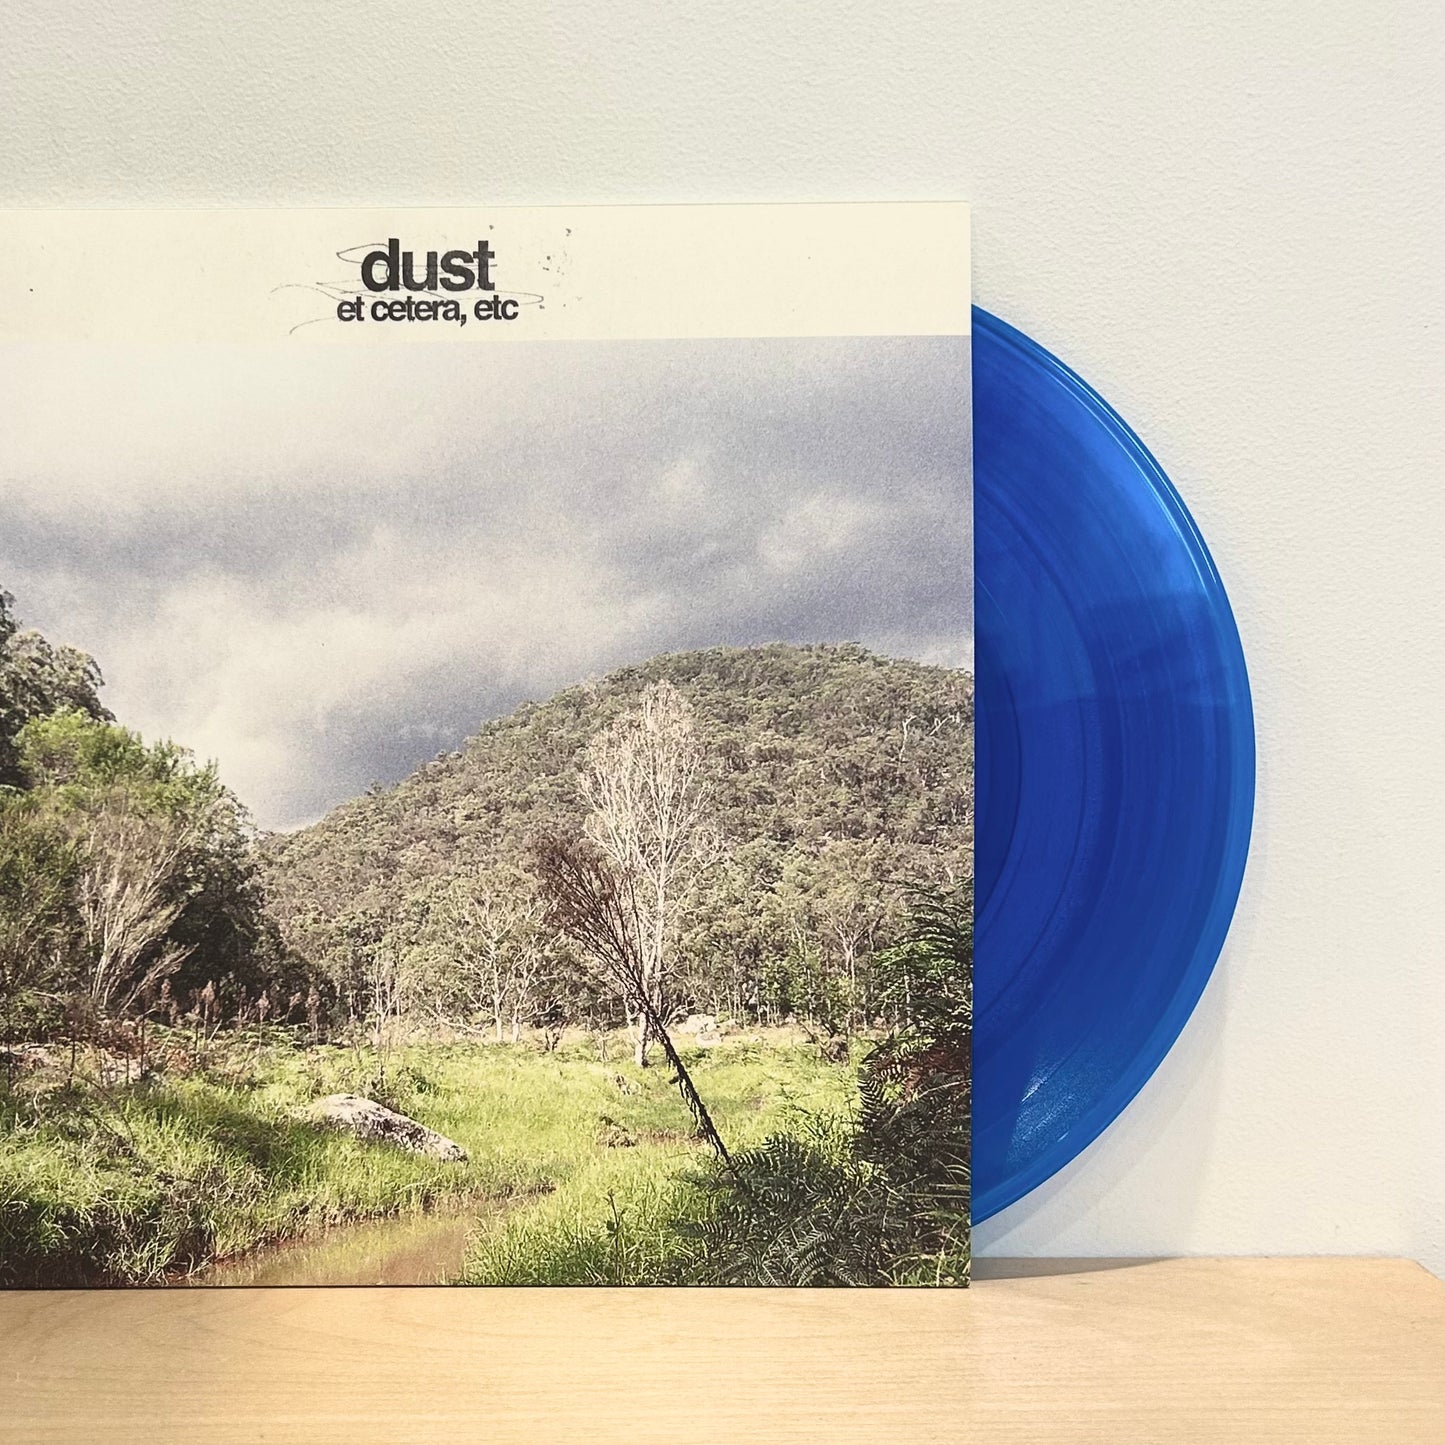 dust - et cetera, etc. LP [Ltd. Ed. Translucent Blue Vinyl]